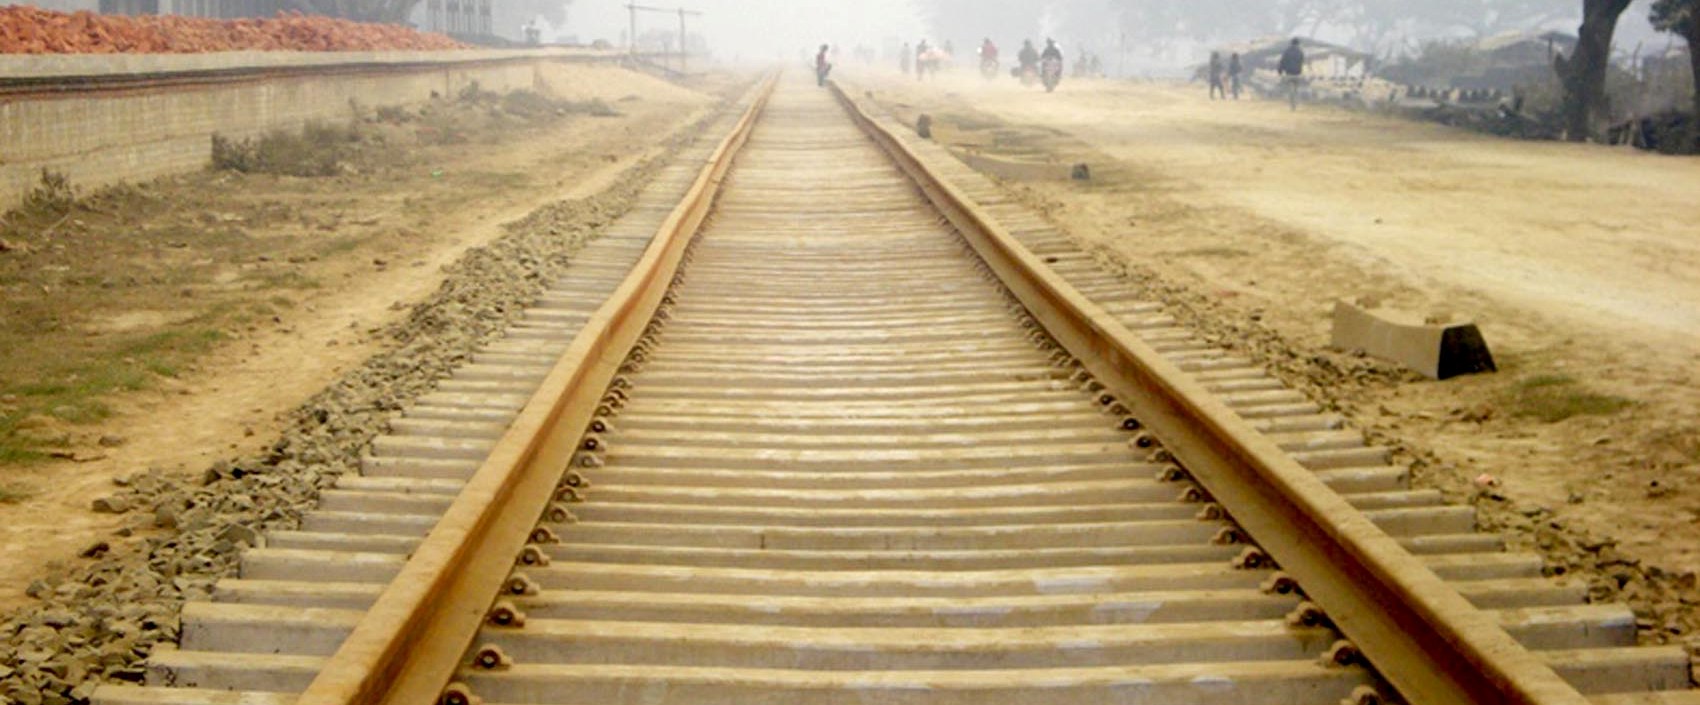 पूर्व–पश्चिम विद्युतीय रेलमार्ग : बर्दिवास–गुजरा खण्डमा ५० प्रतिशत काम सम्पन्न